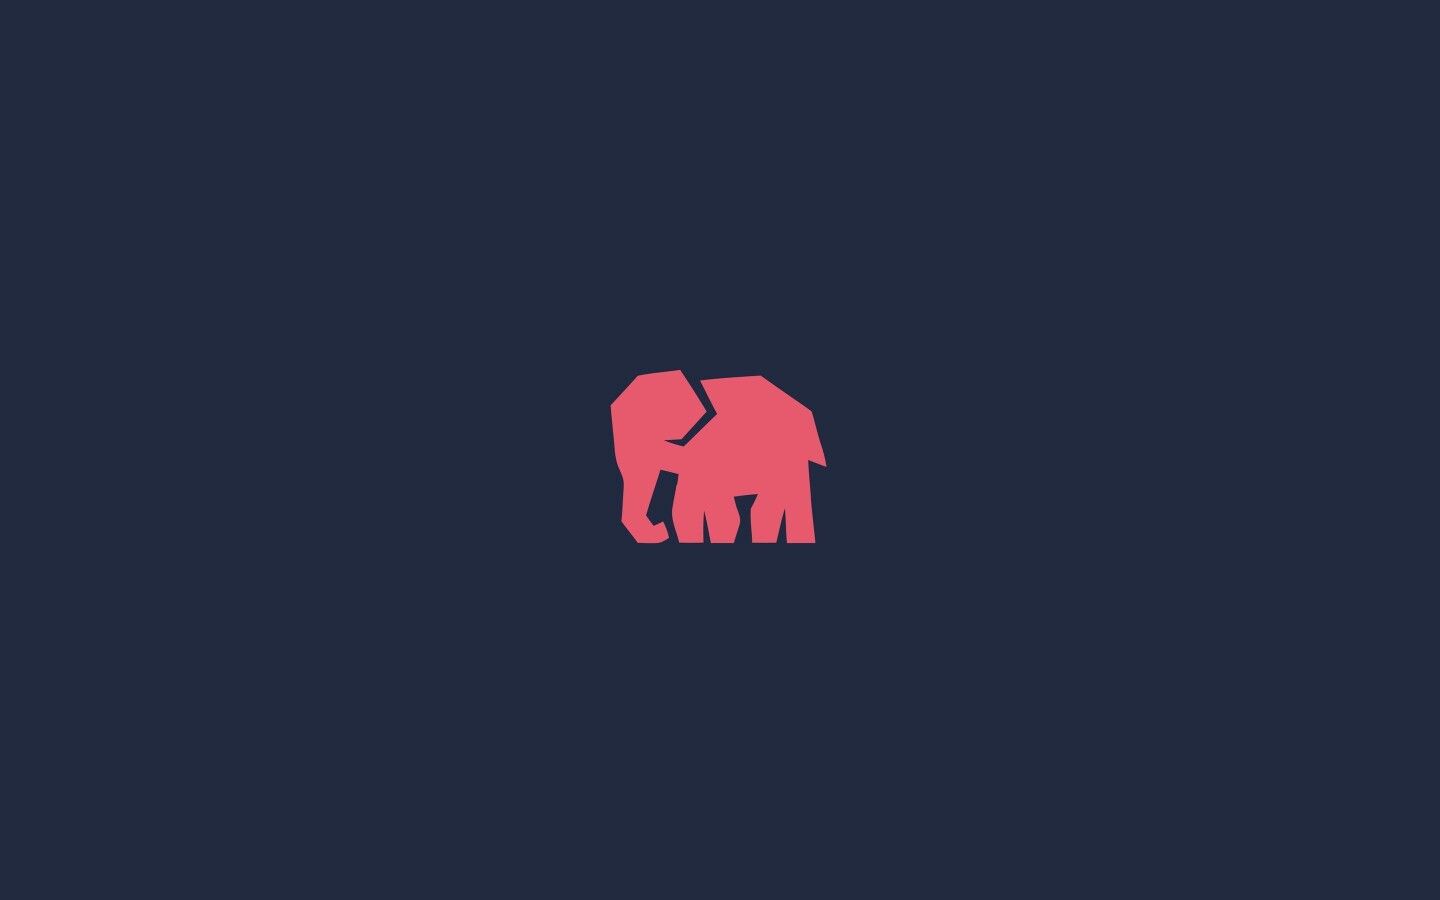 Screenshots. Elephant silhouette